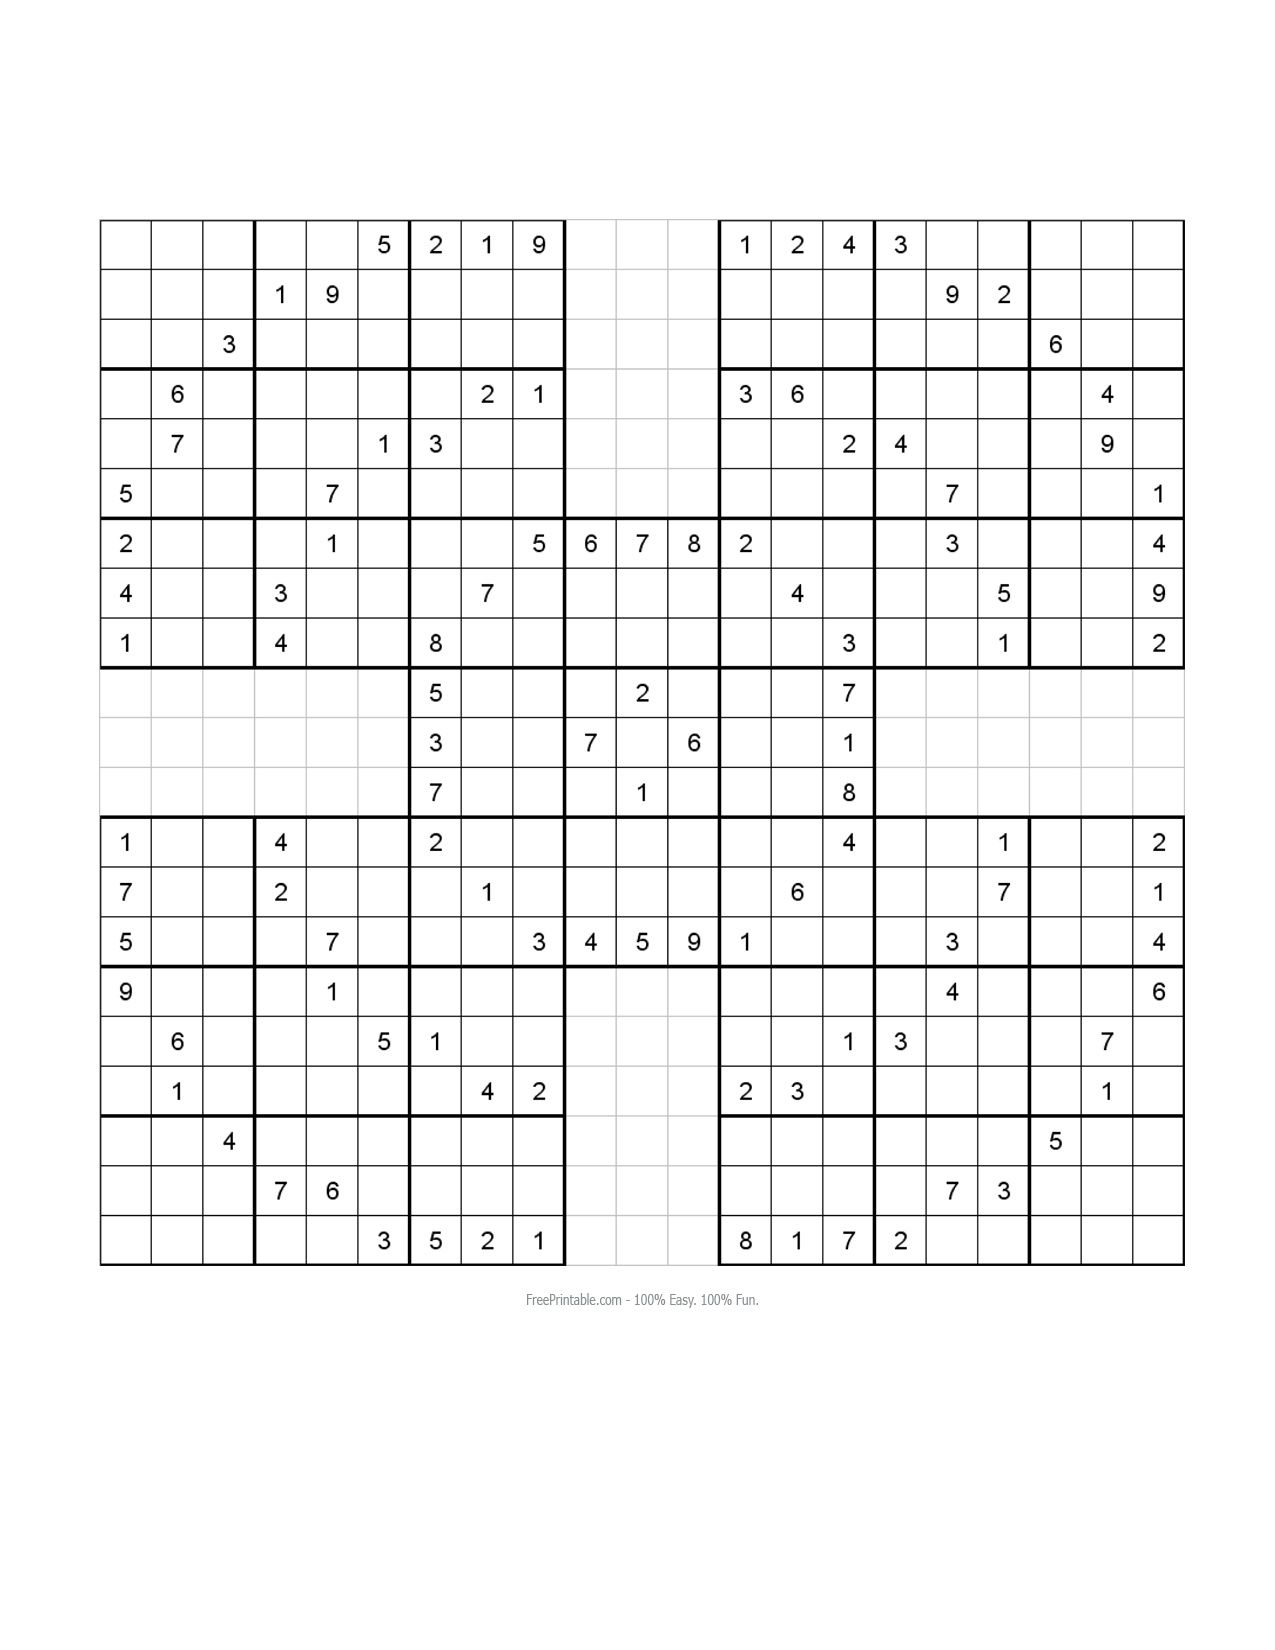 Free Printable Samurai Sudoku Puzzles | Sudoku - Free Printable Samurai Sudoku